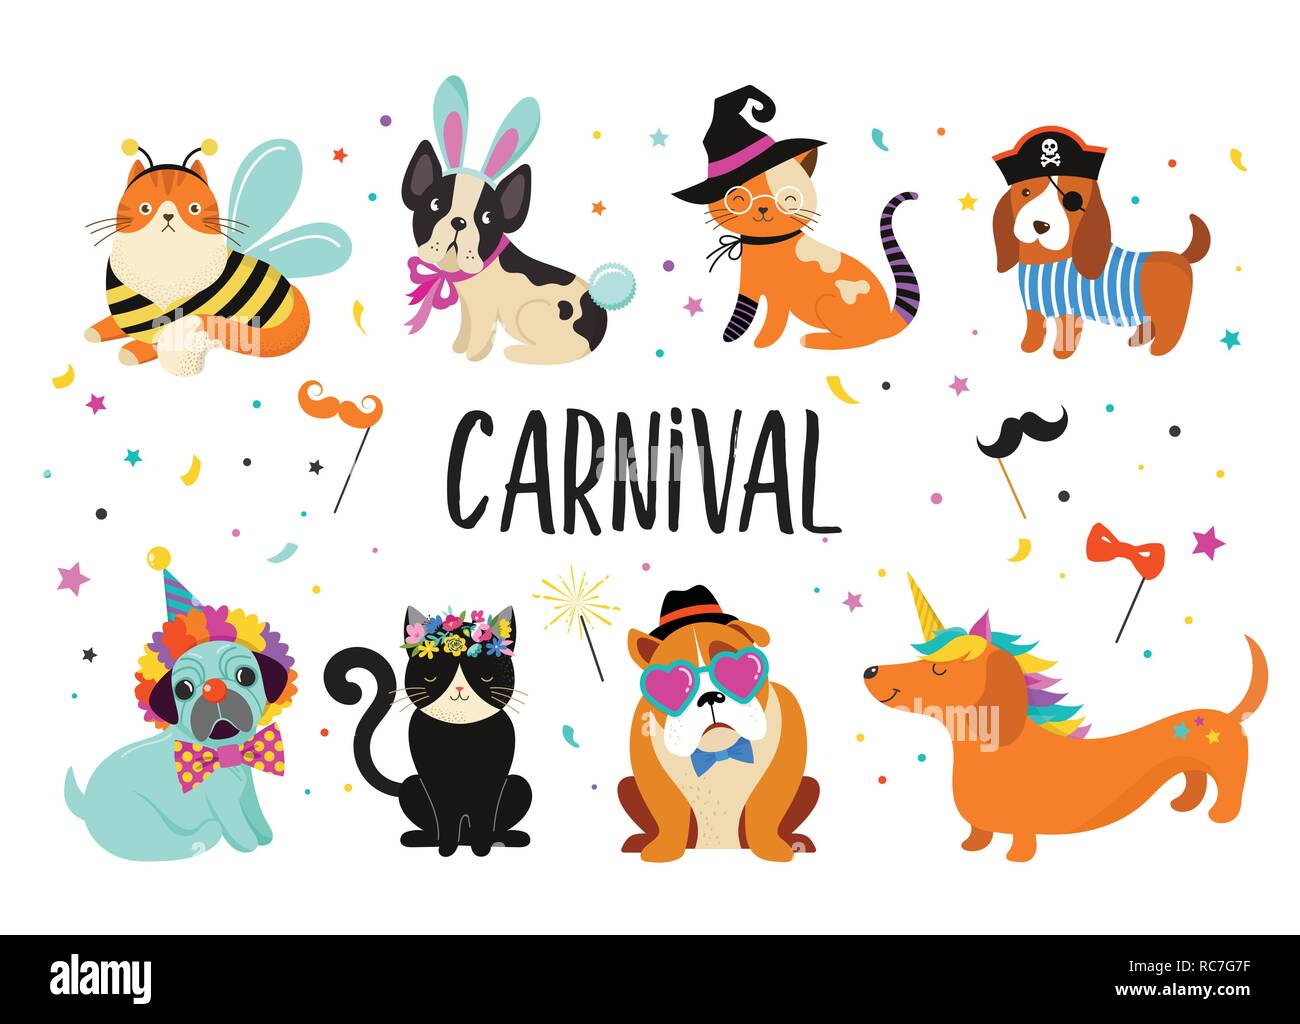 Lustige Tiere, Haustiere. Süße Hunde und Katzen mit einem bunten Karneval  Kostüme, Vector Illustration Stock-Vektorgrafik - Alamy